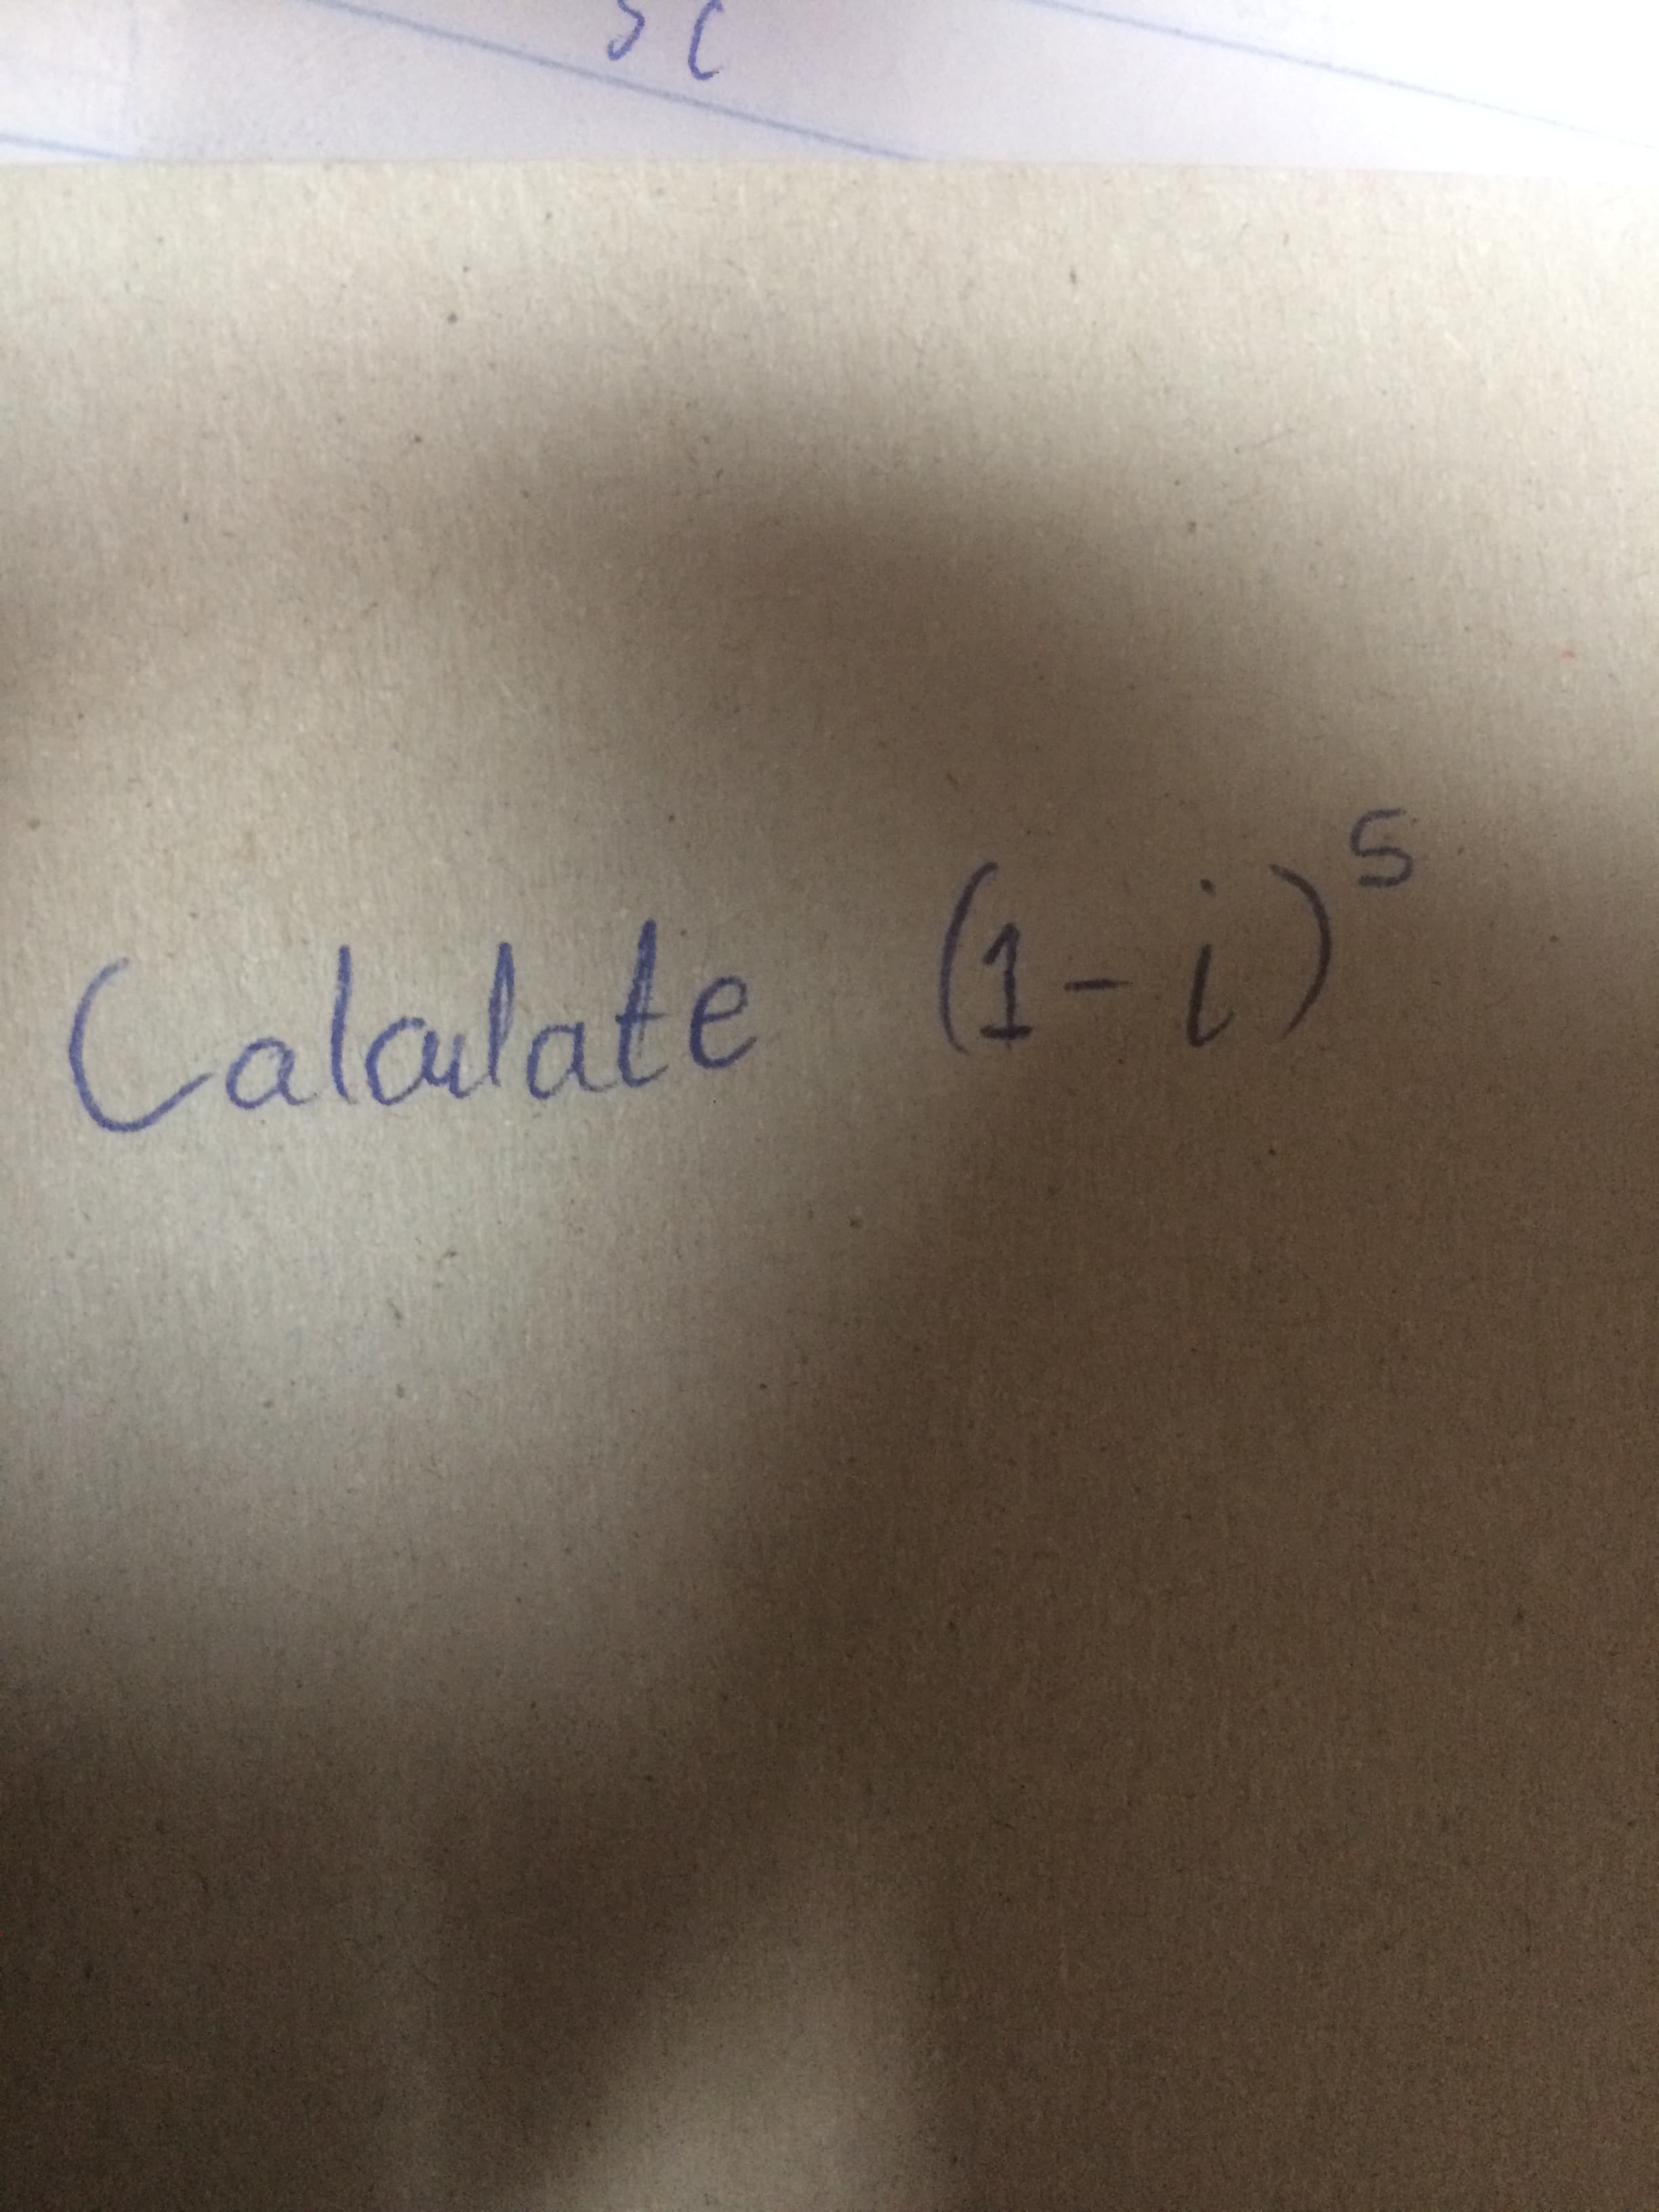 Calalate (1-)
